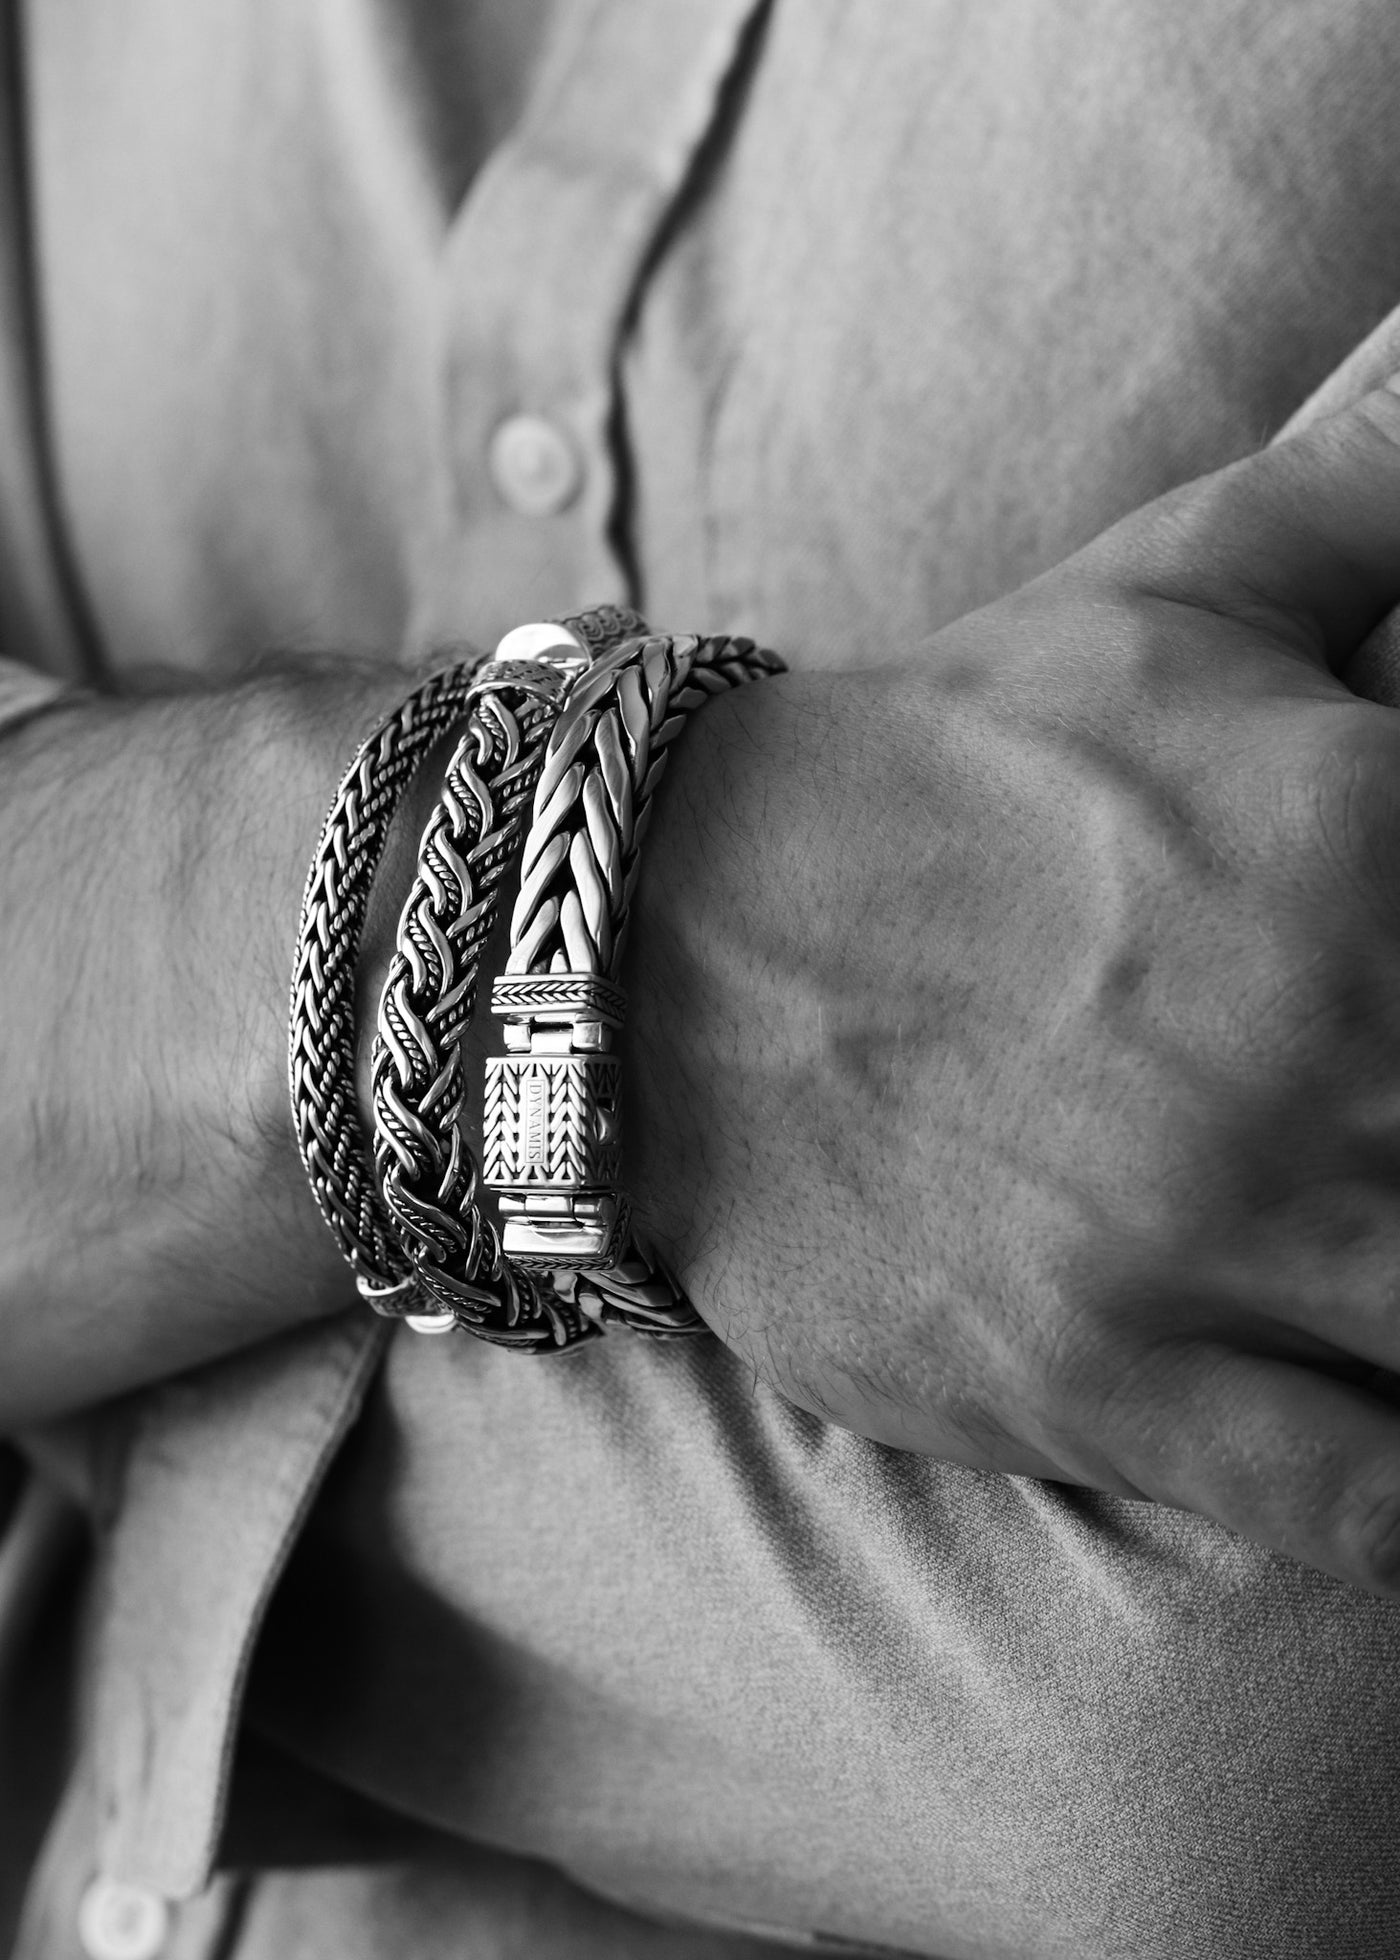 The Legend Heavy Bali Silver Bracelet